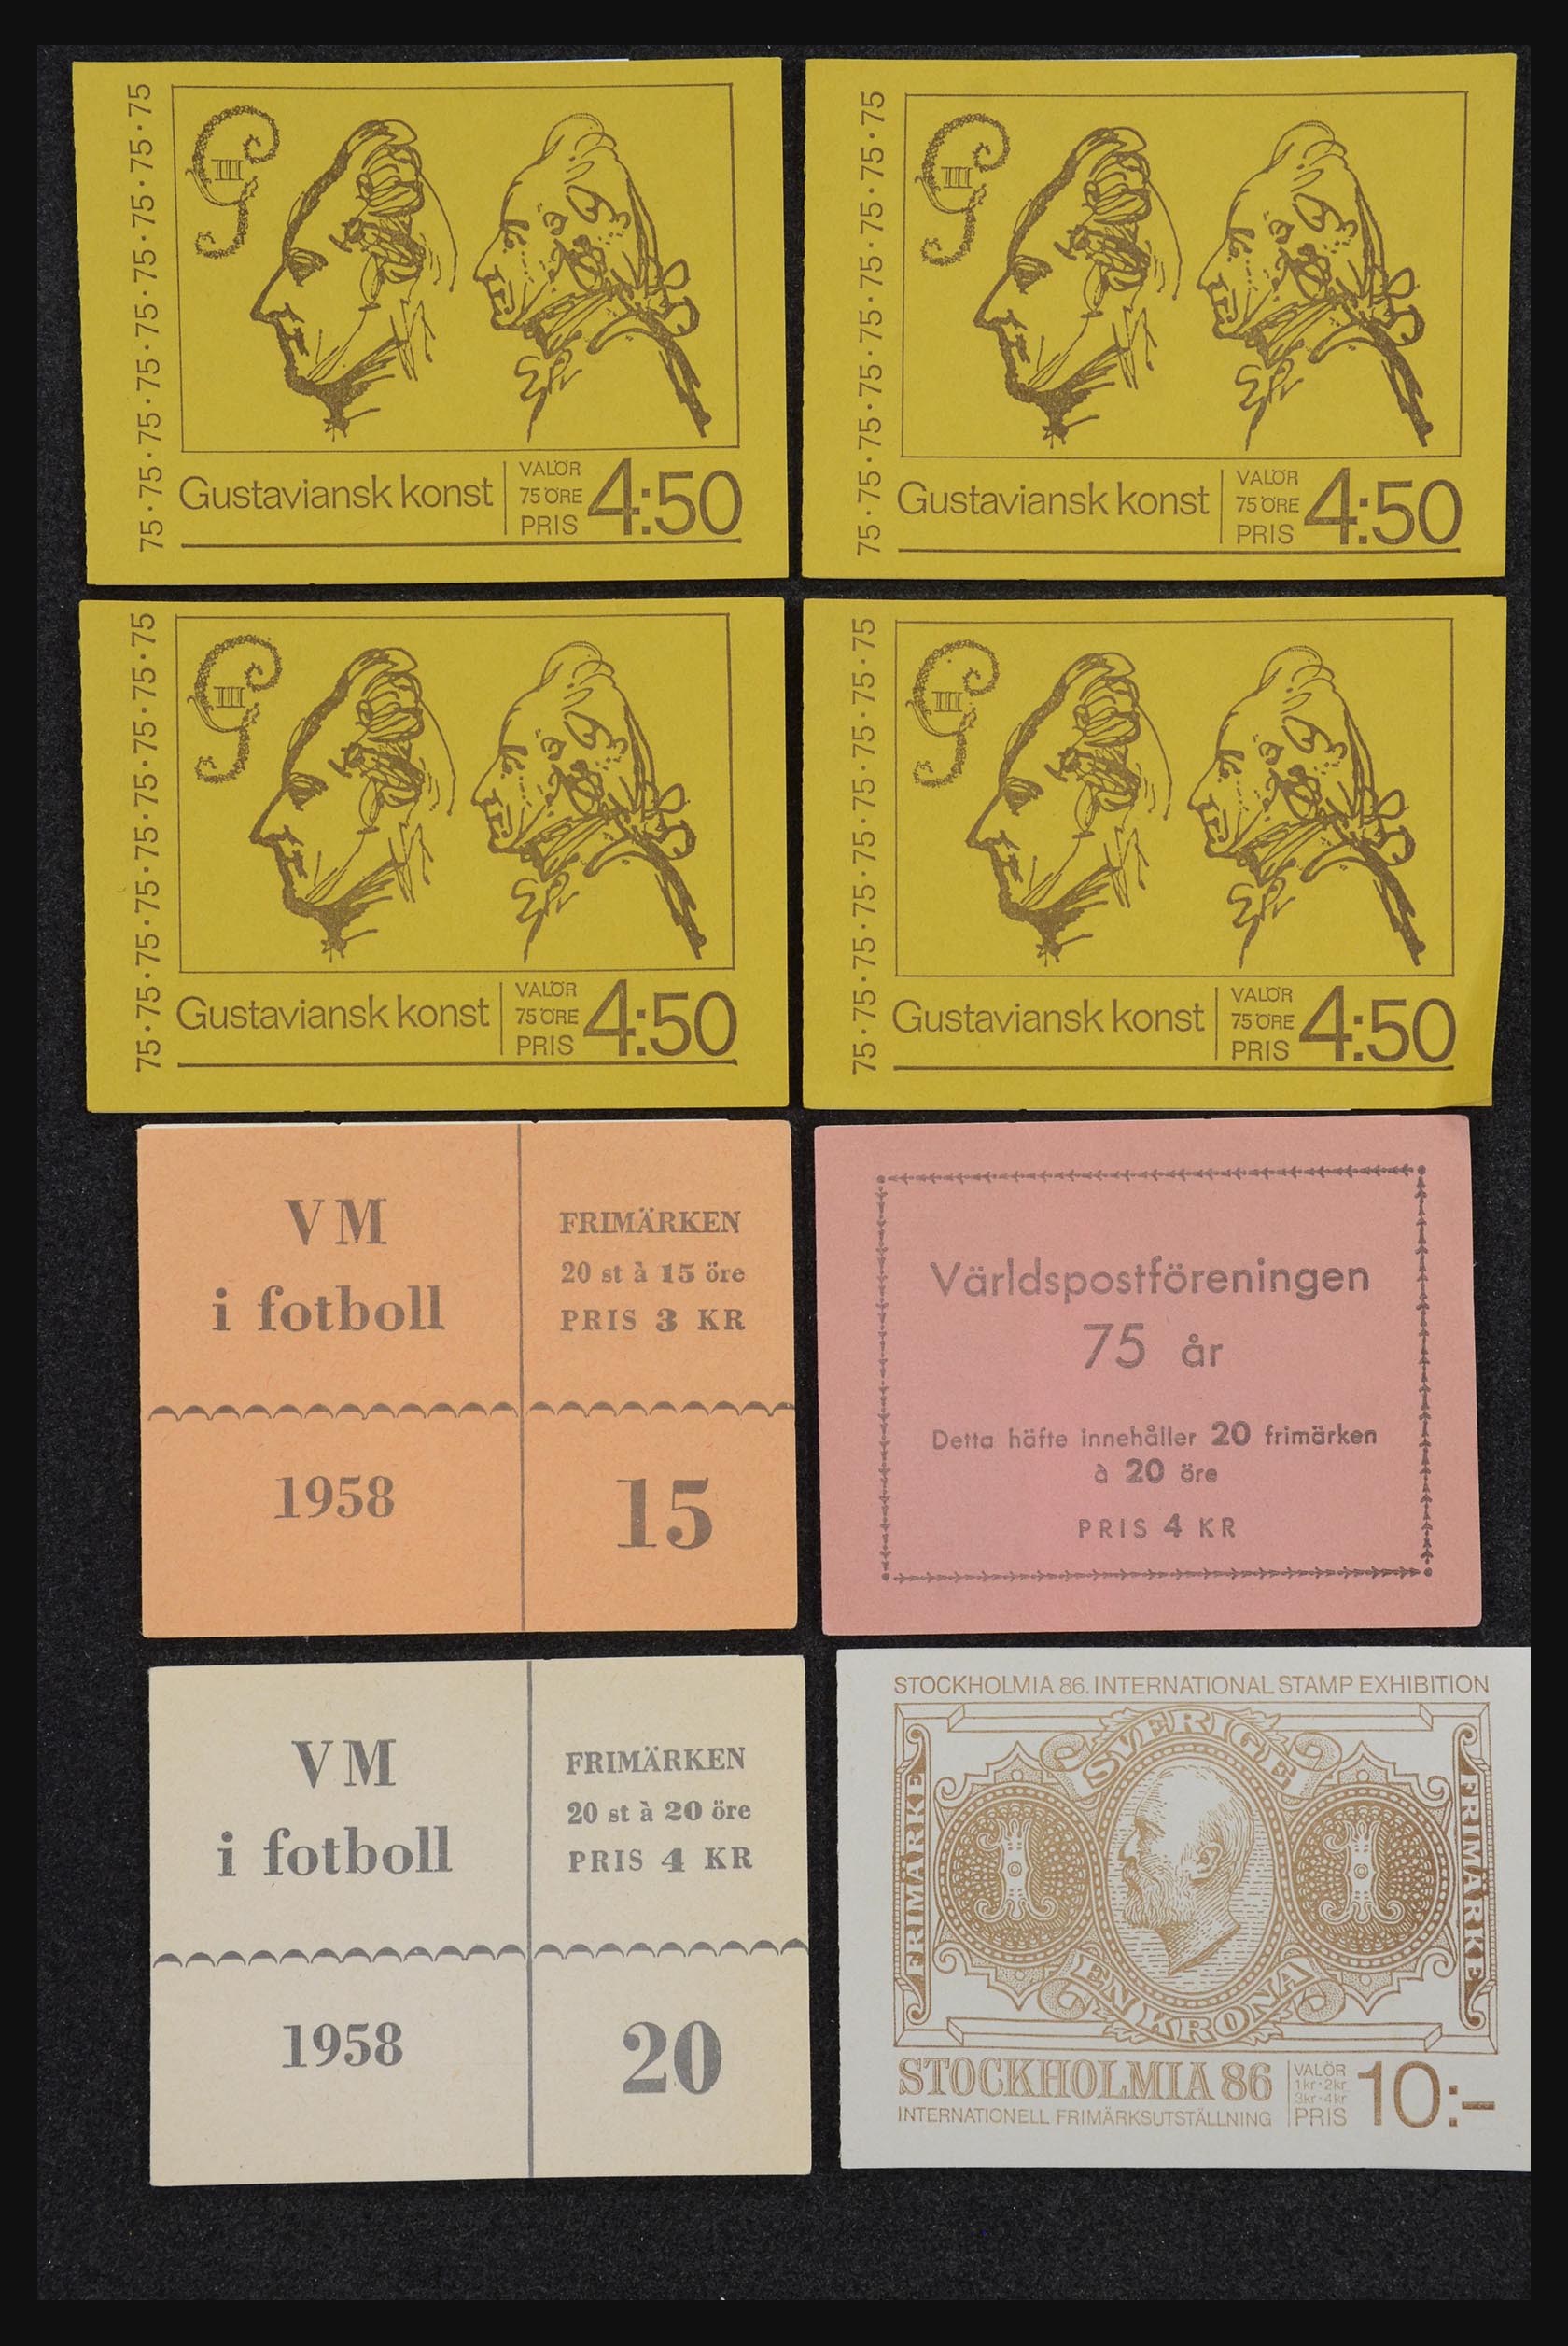 32026 043 - 32026 Sweden stampbooklets 1949-1990.